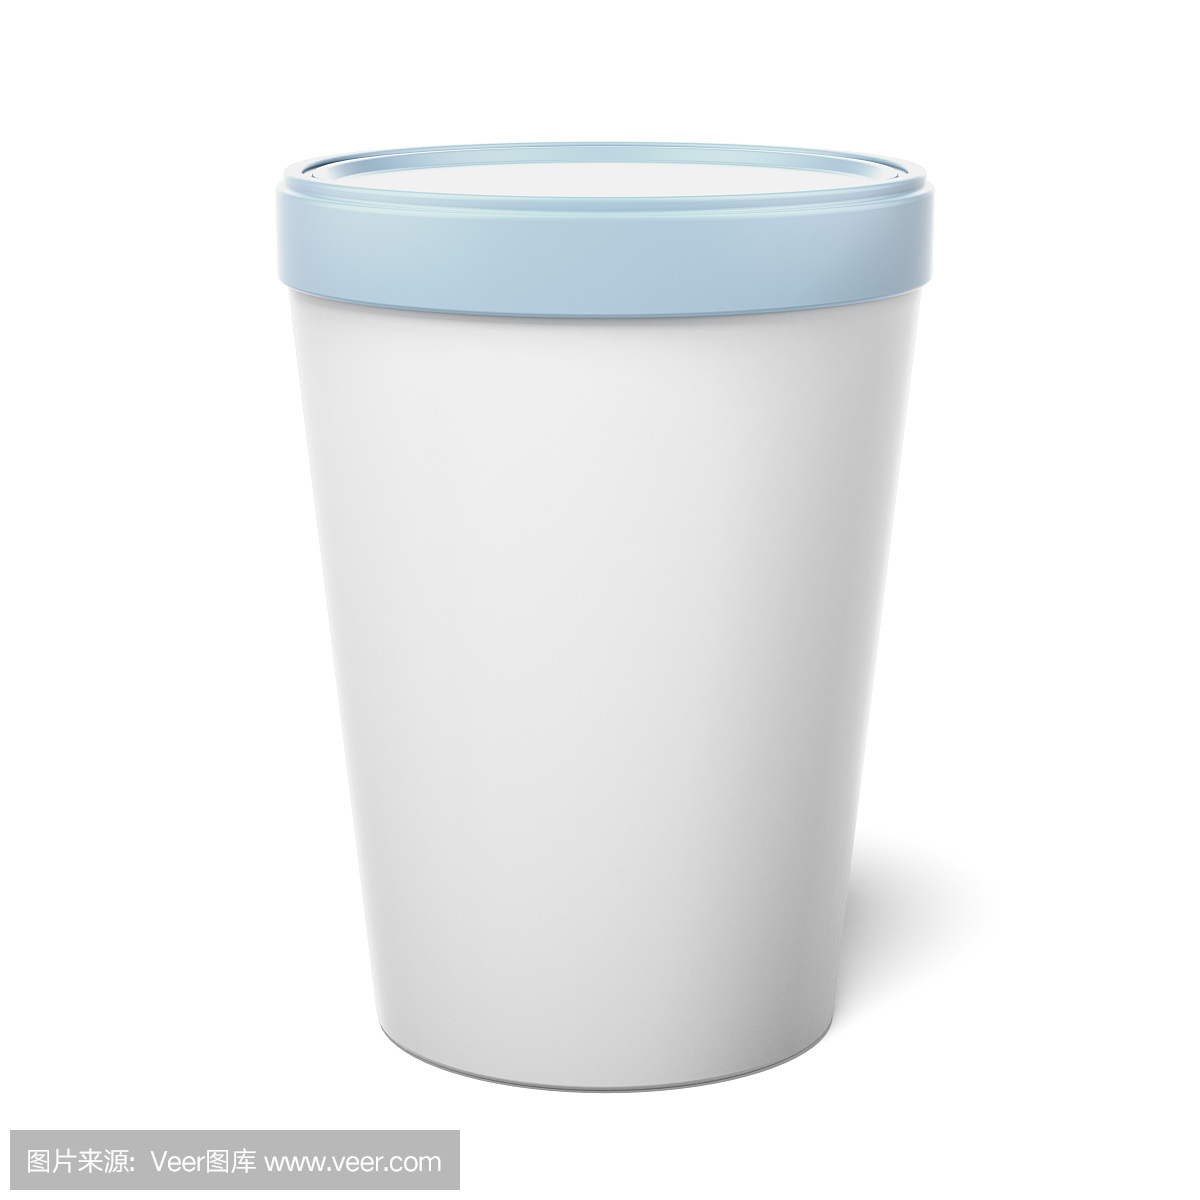 白色塑料桶桶容器